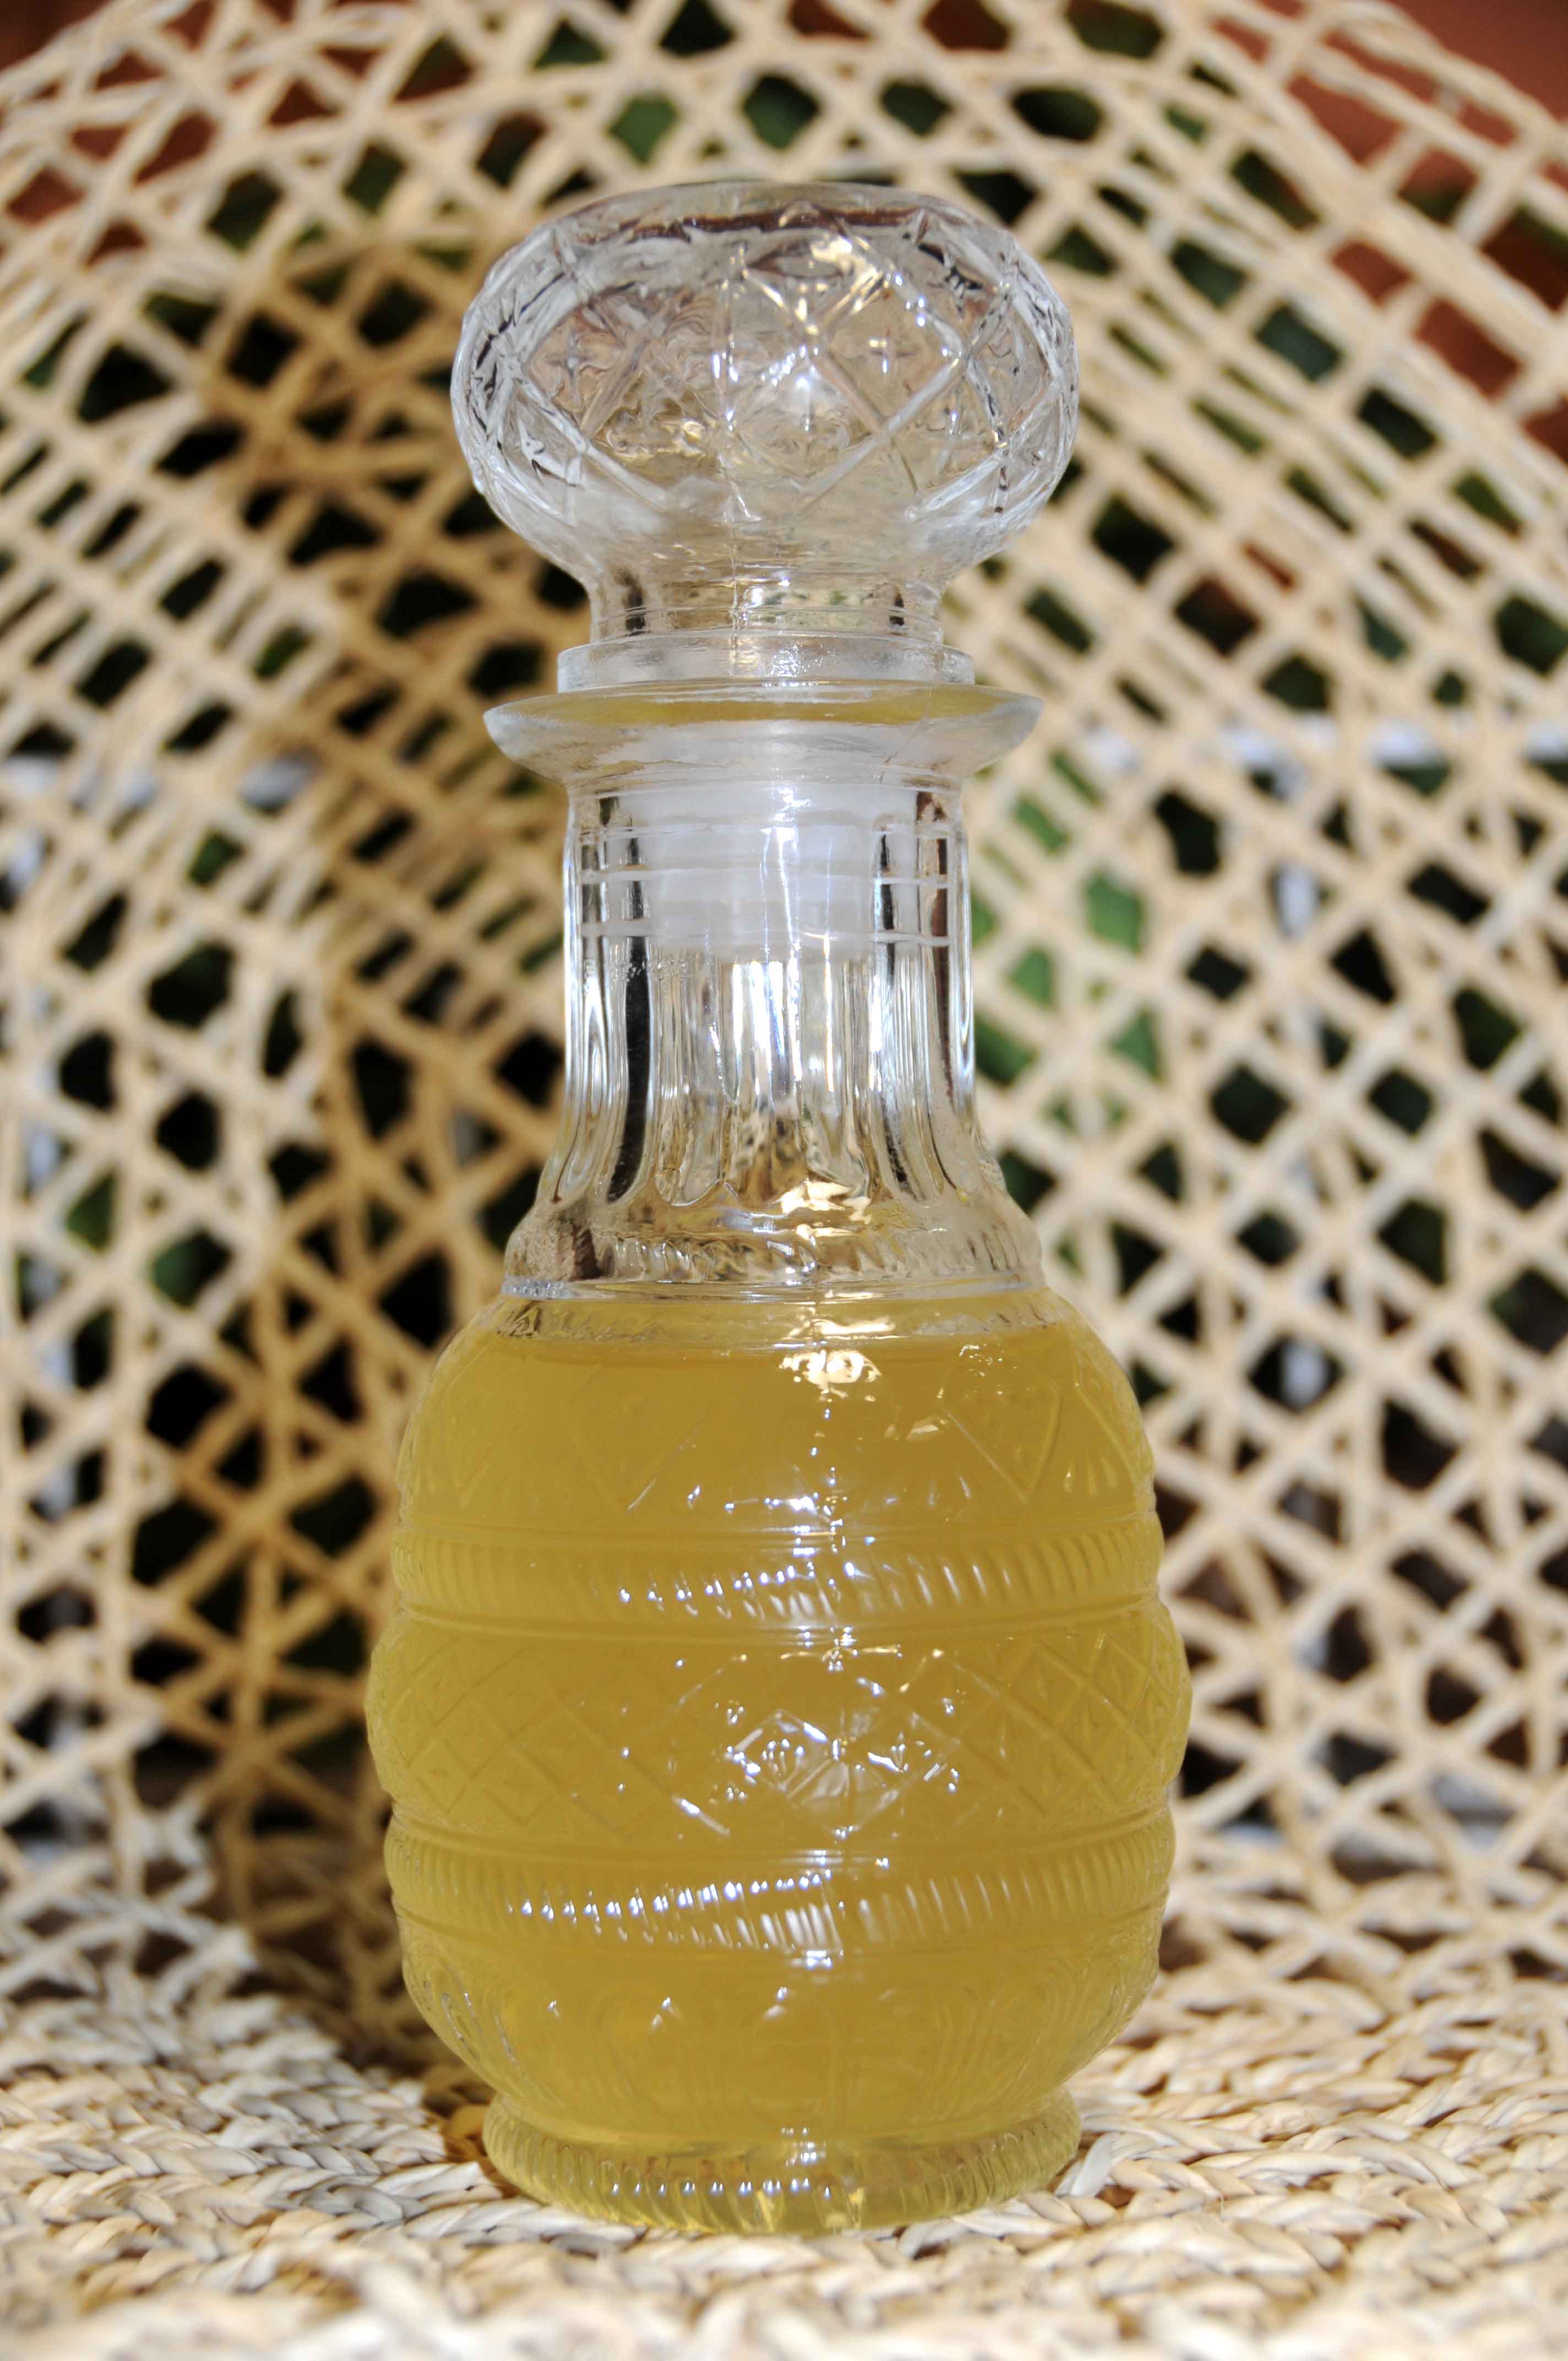 Λικέρ λεμόνι (μόνο τις φλούδες χωρίς το άσπρο μέρος τους) - Lemon liqueur (only peels without the white part)